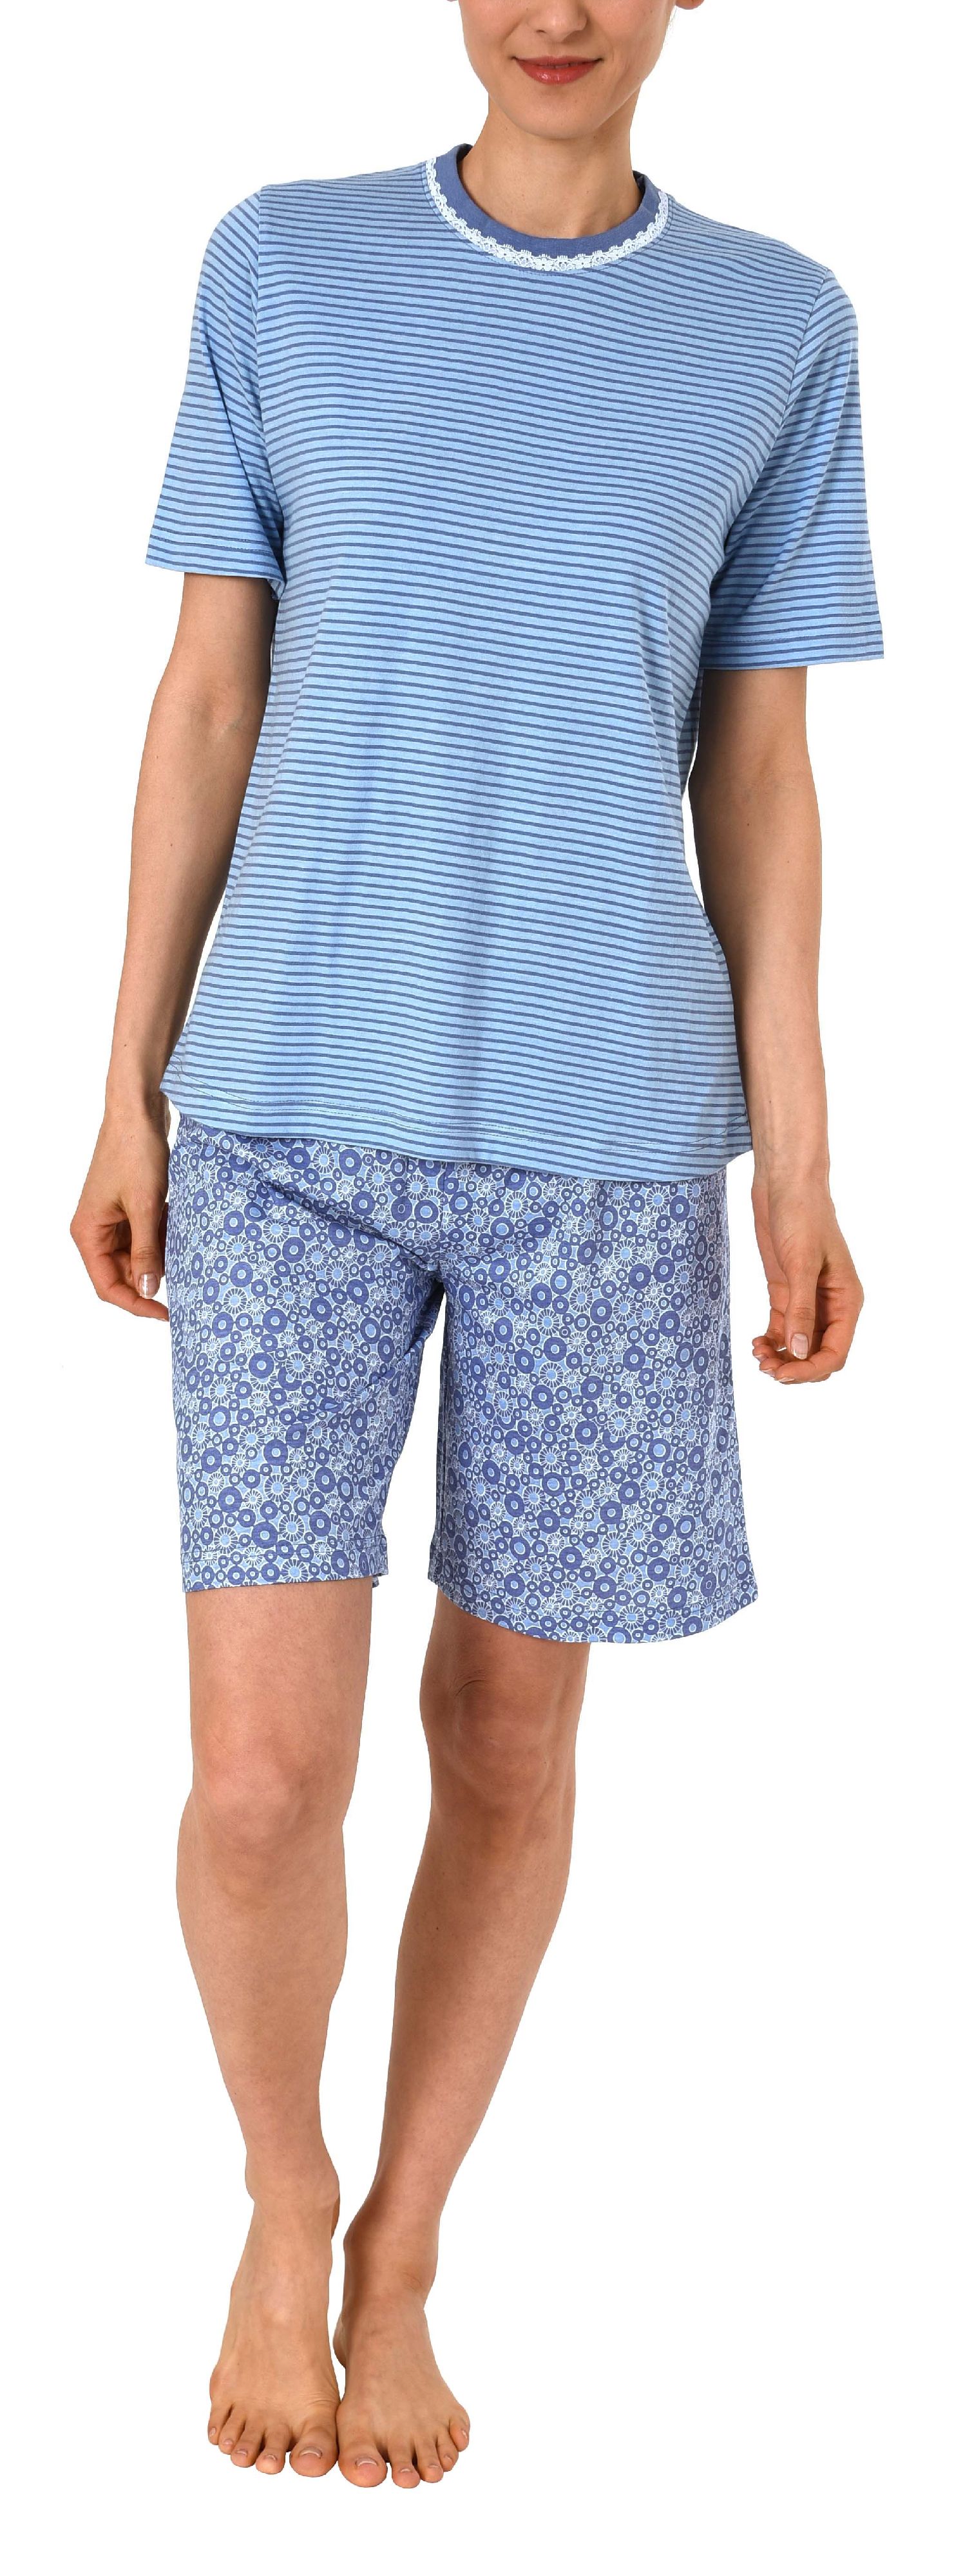 Damen Shorty Pyjama kurzarm mit Spitzenbesatz- auch in Übergrössen bis Grösse 60/62 - 191 205 90 838